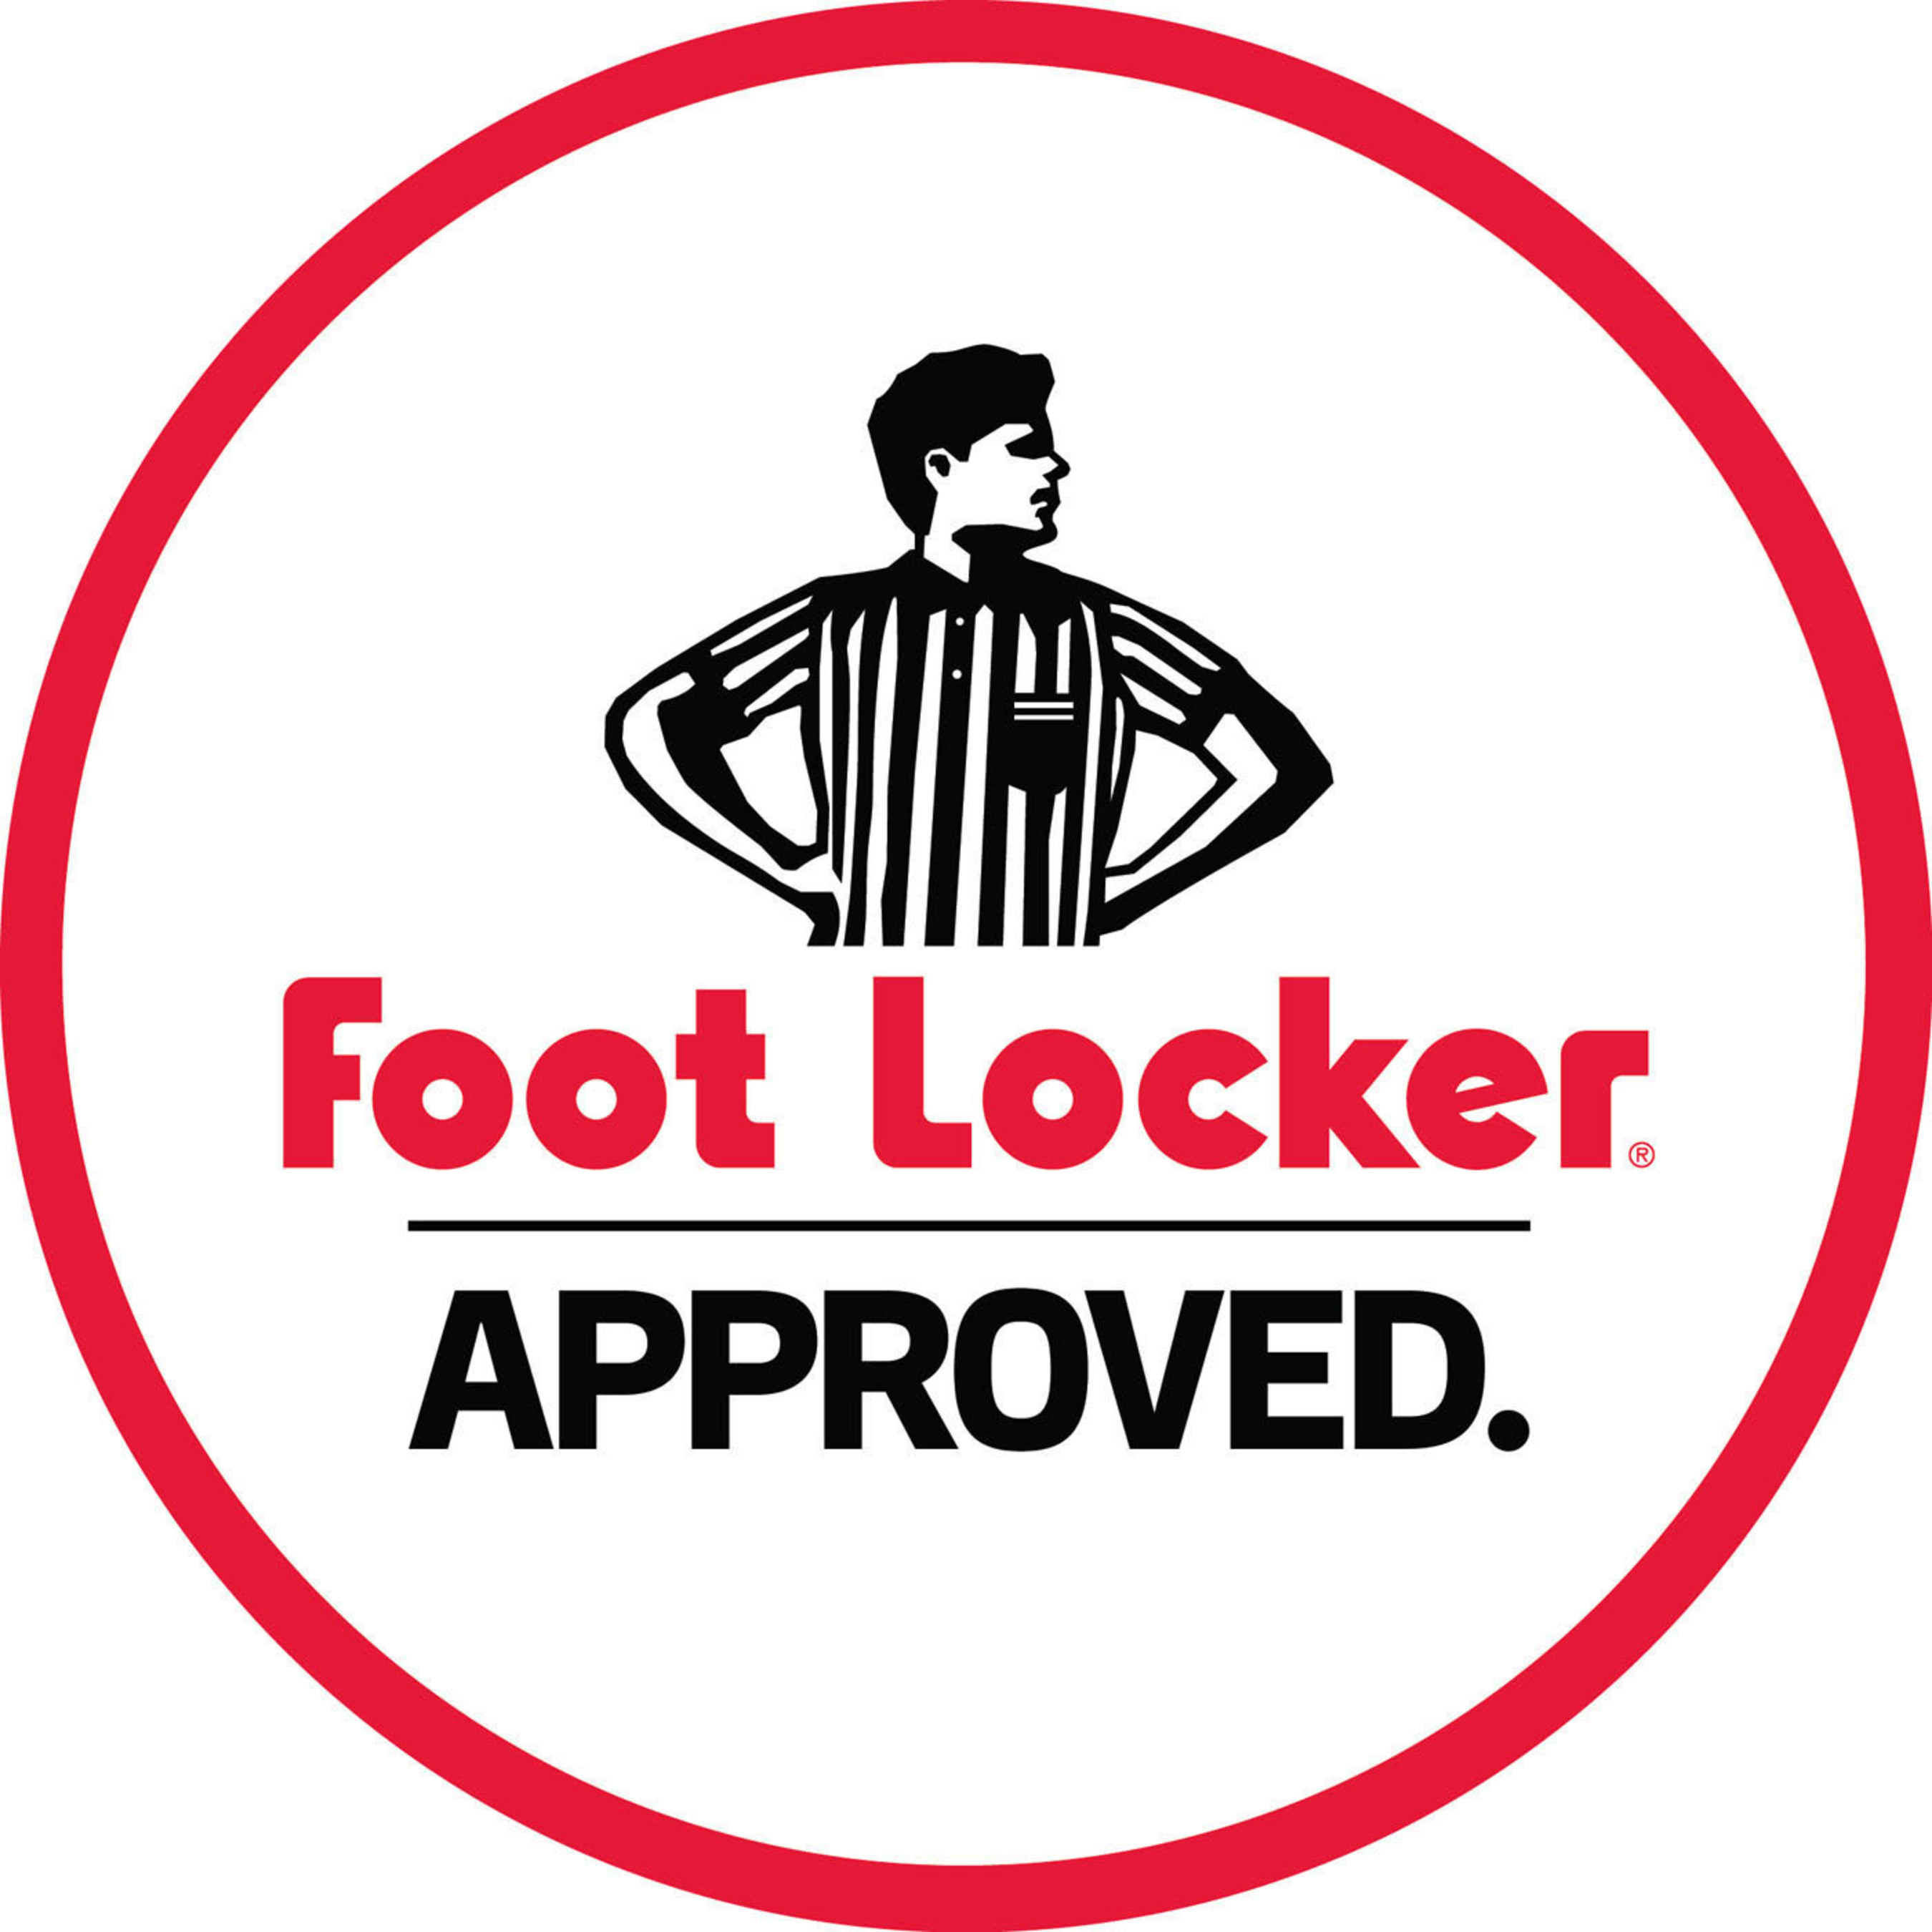 Foot Locker Approved.